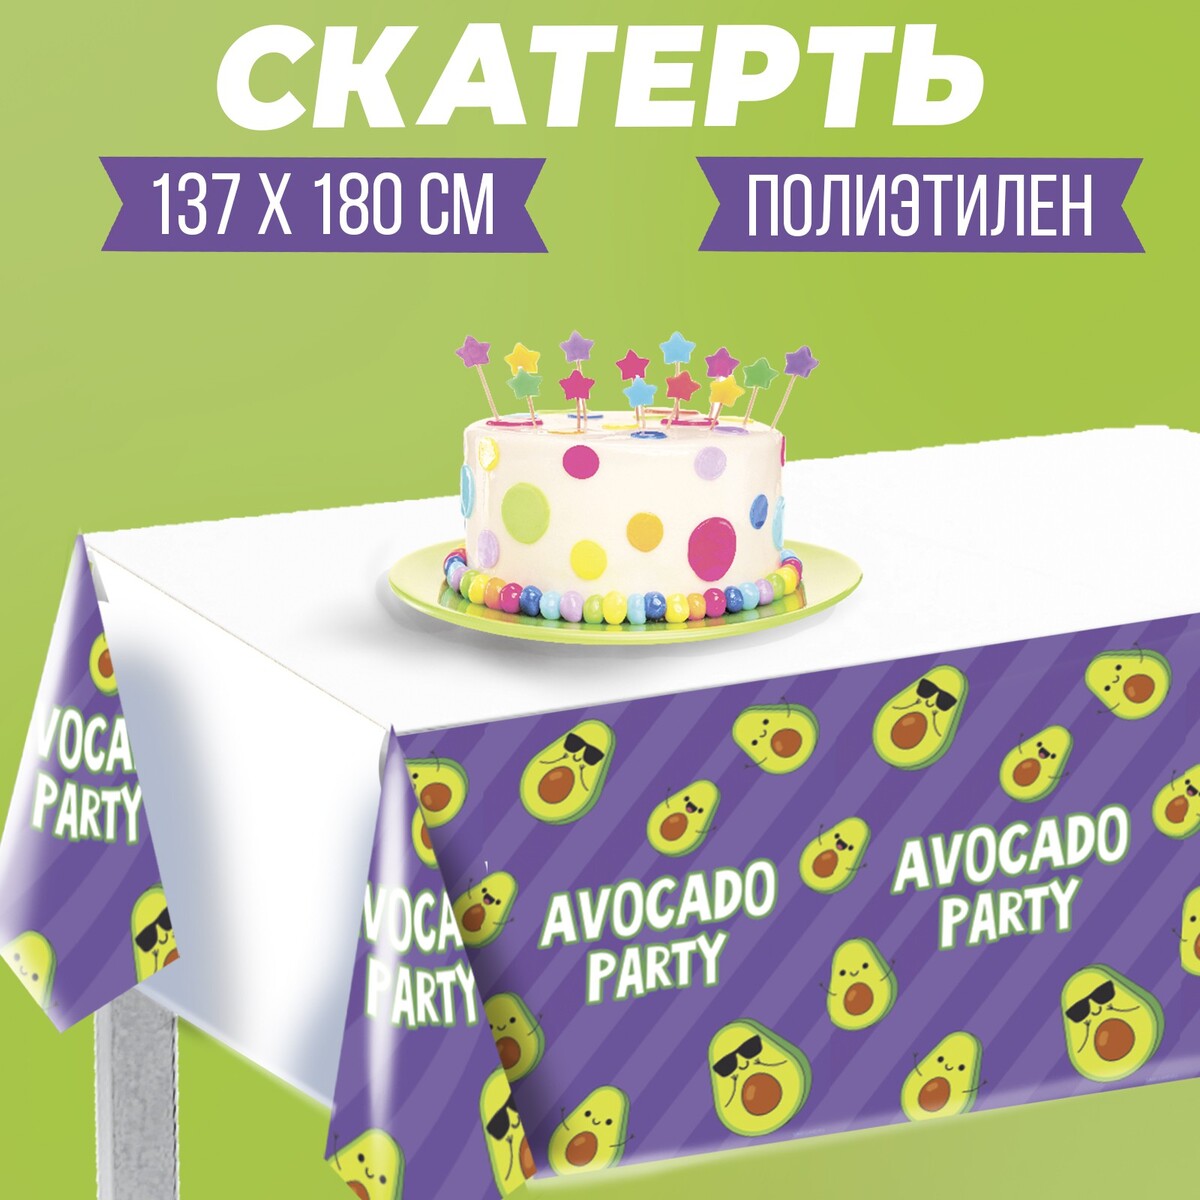 Скатерть avocado party 137×180см, фиолетовая скатерть happy birthday золотые листья полиэтилен 137×180см